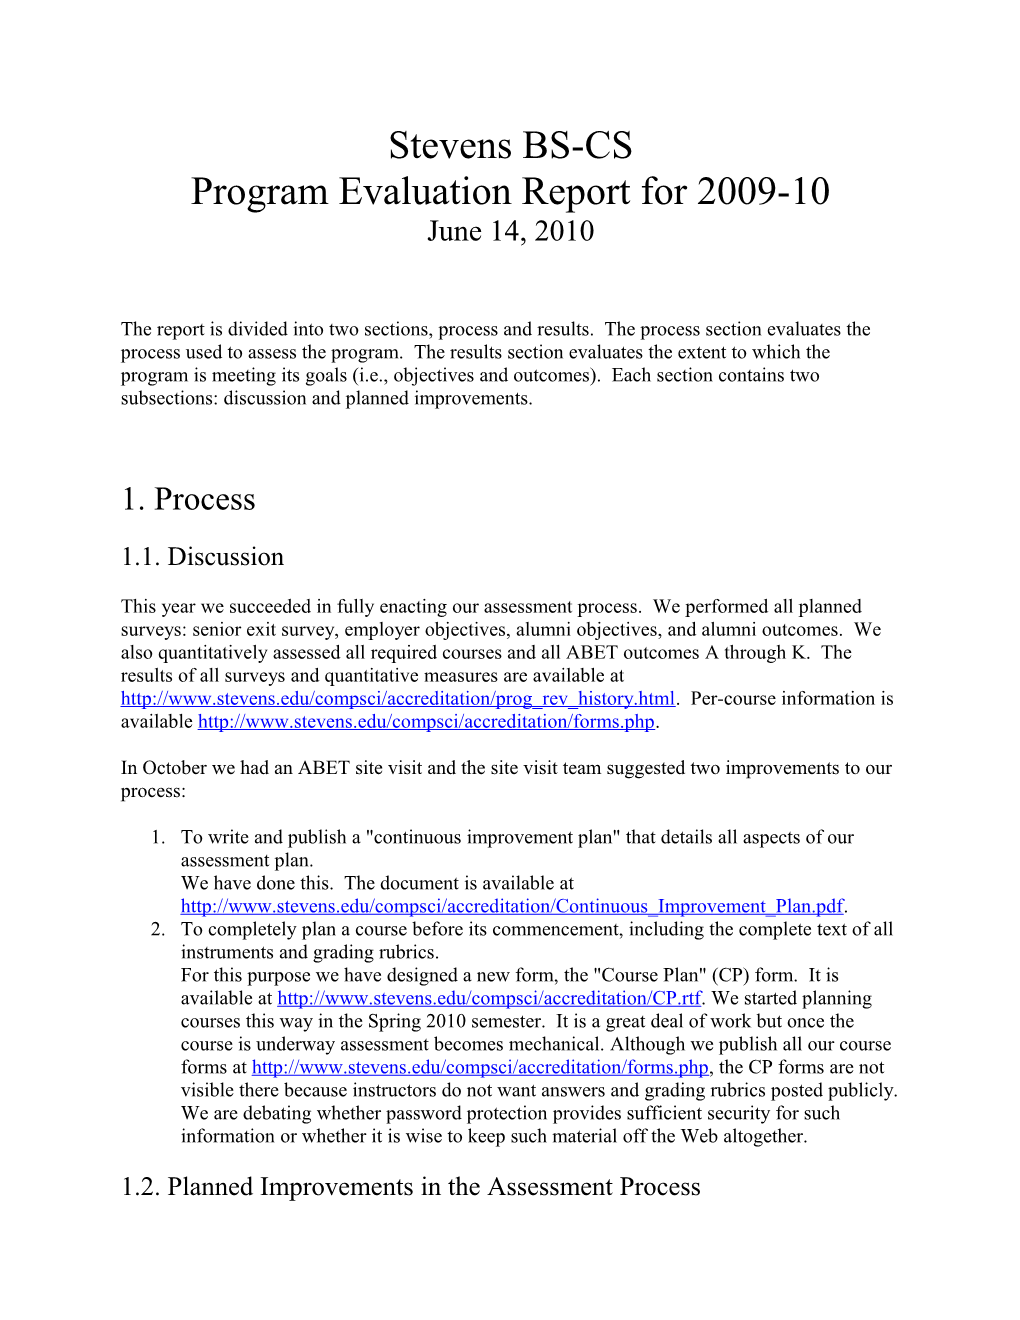 Stevens BS-CS Program Evaluation Report for 2009-10 June 14, 2010